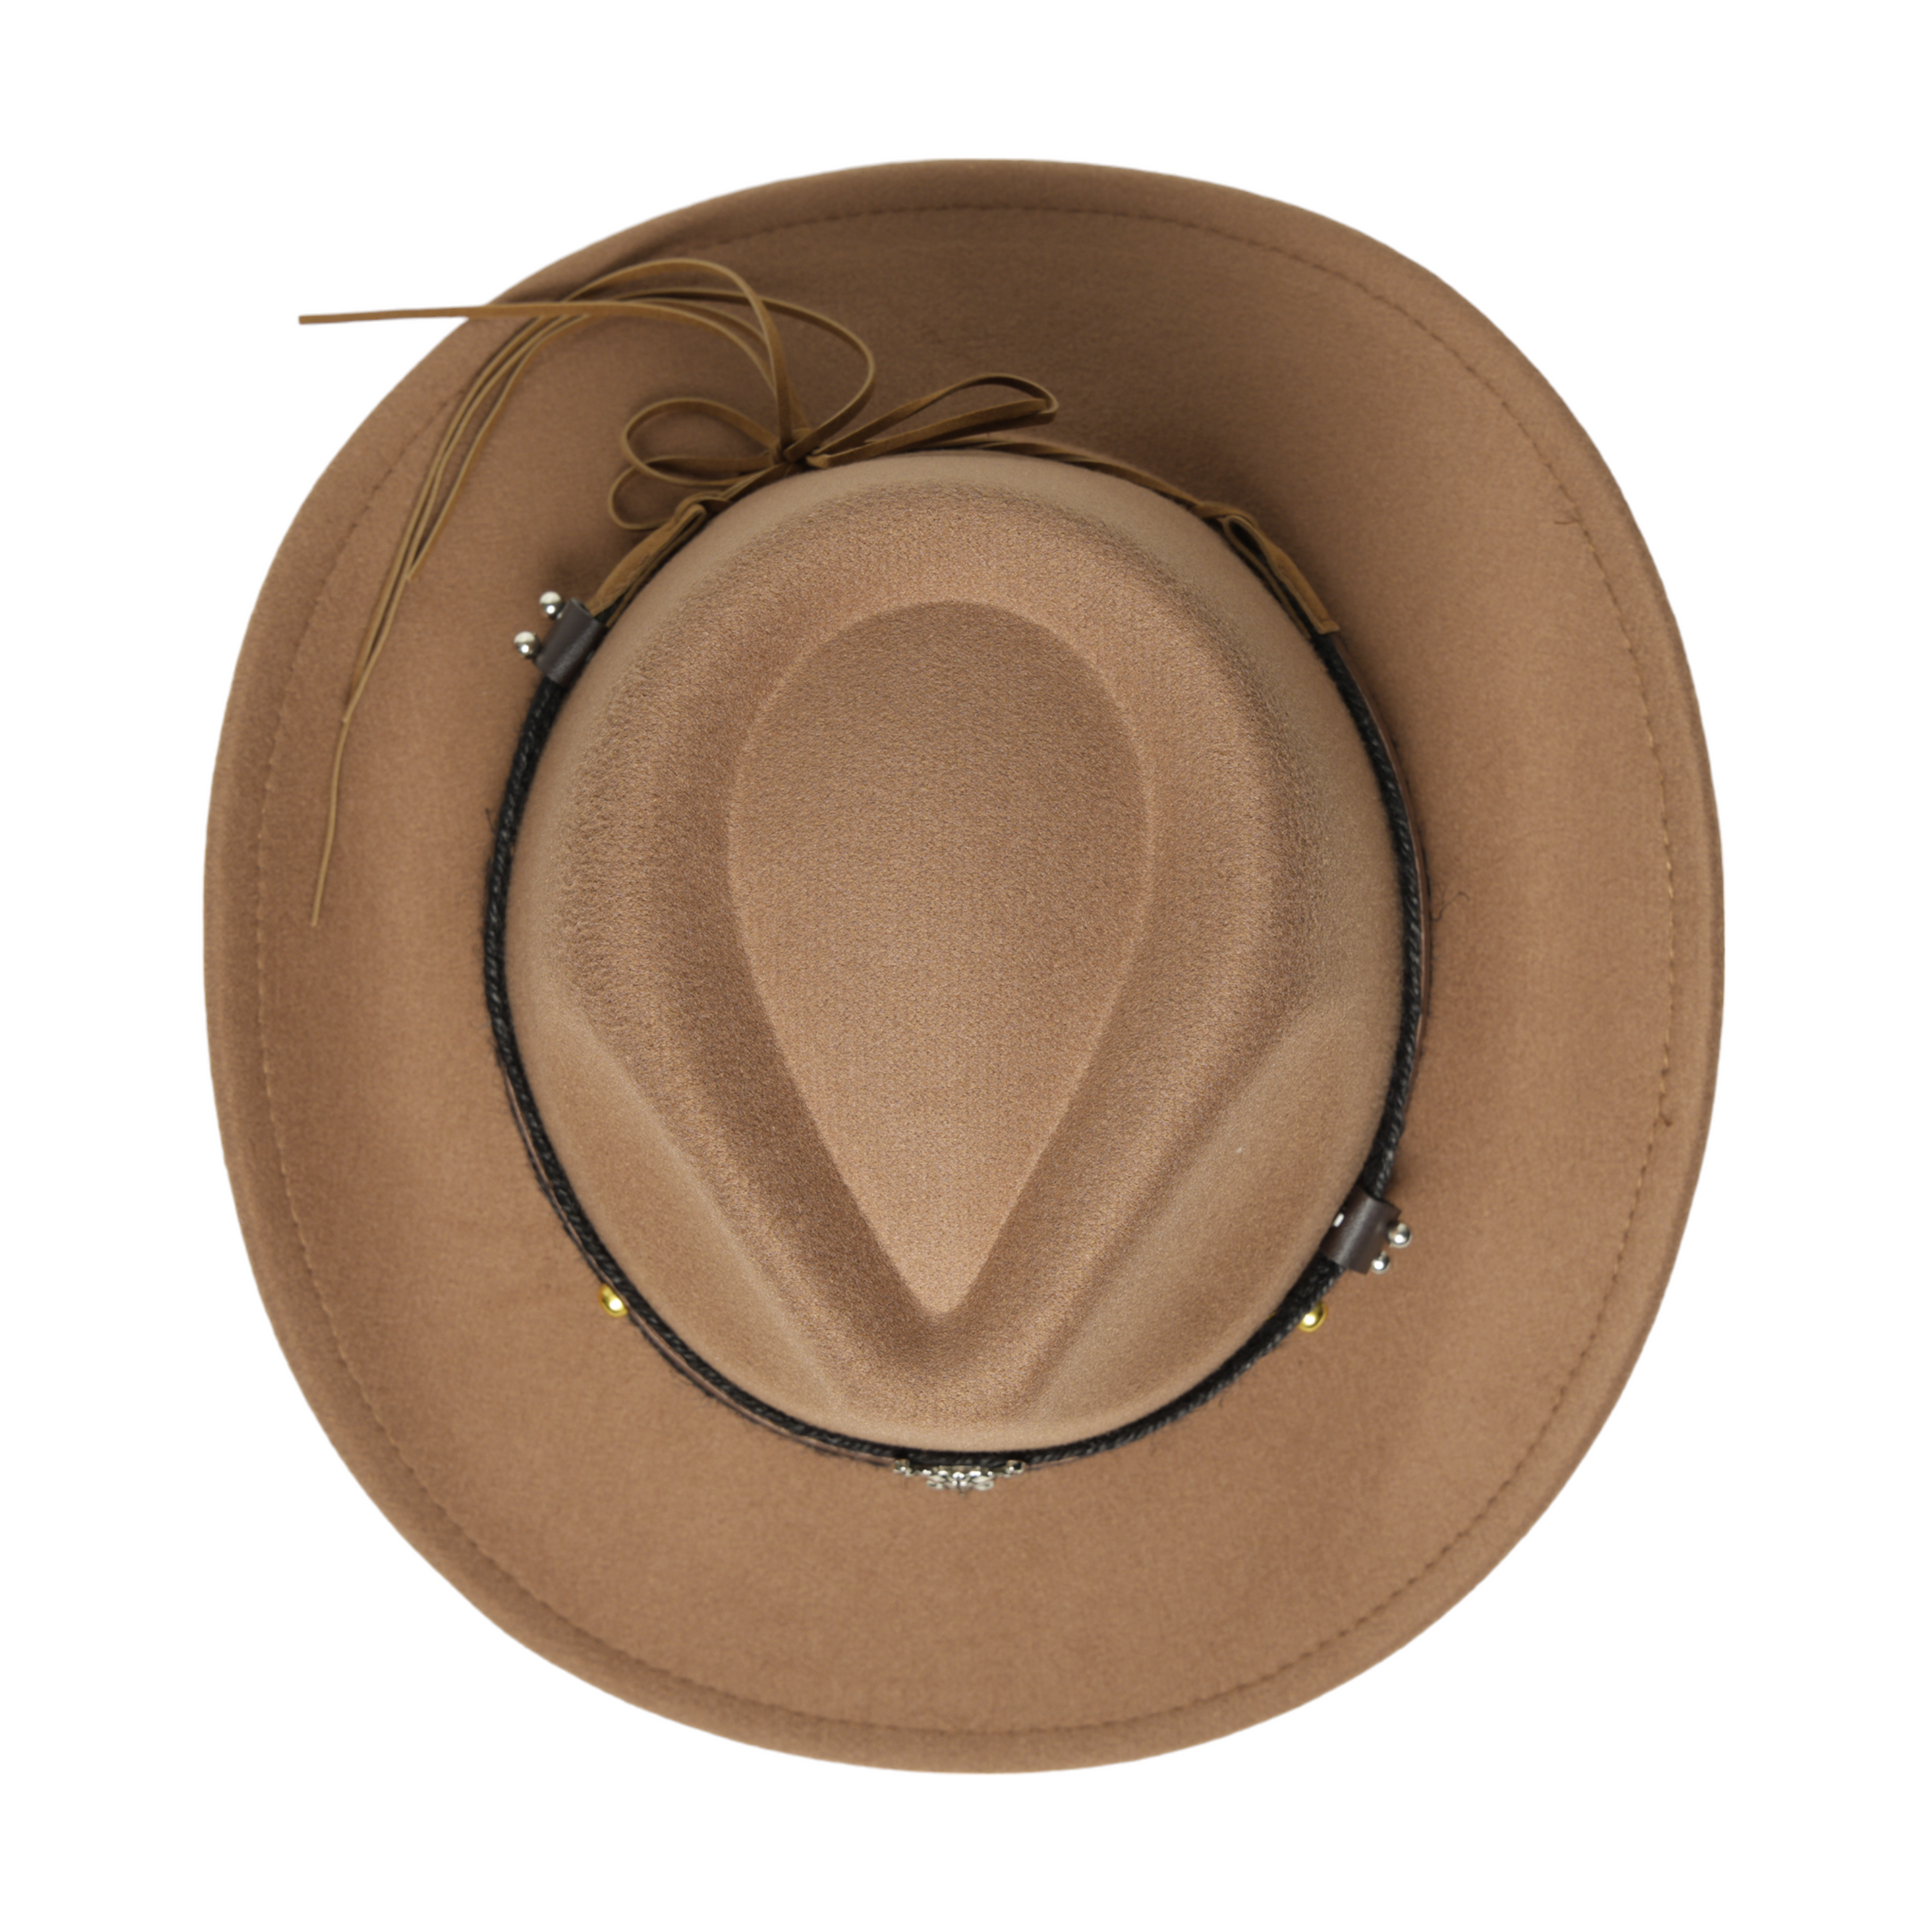 Chokore American Cowhead cowboy Hat (khaki)